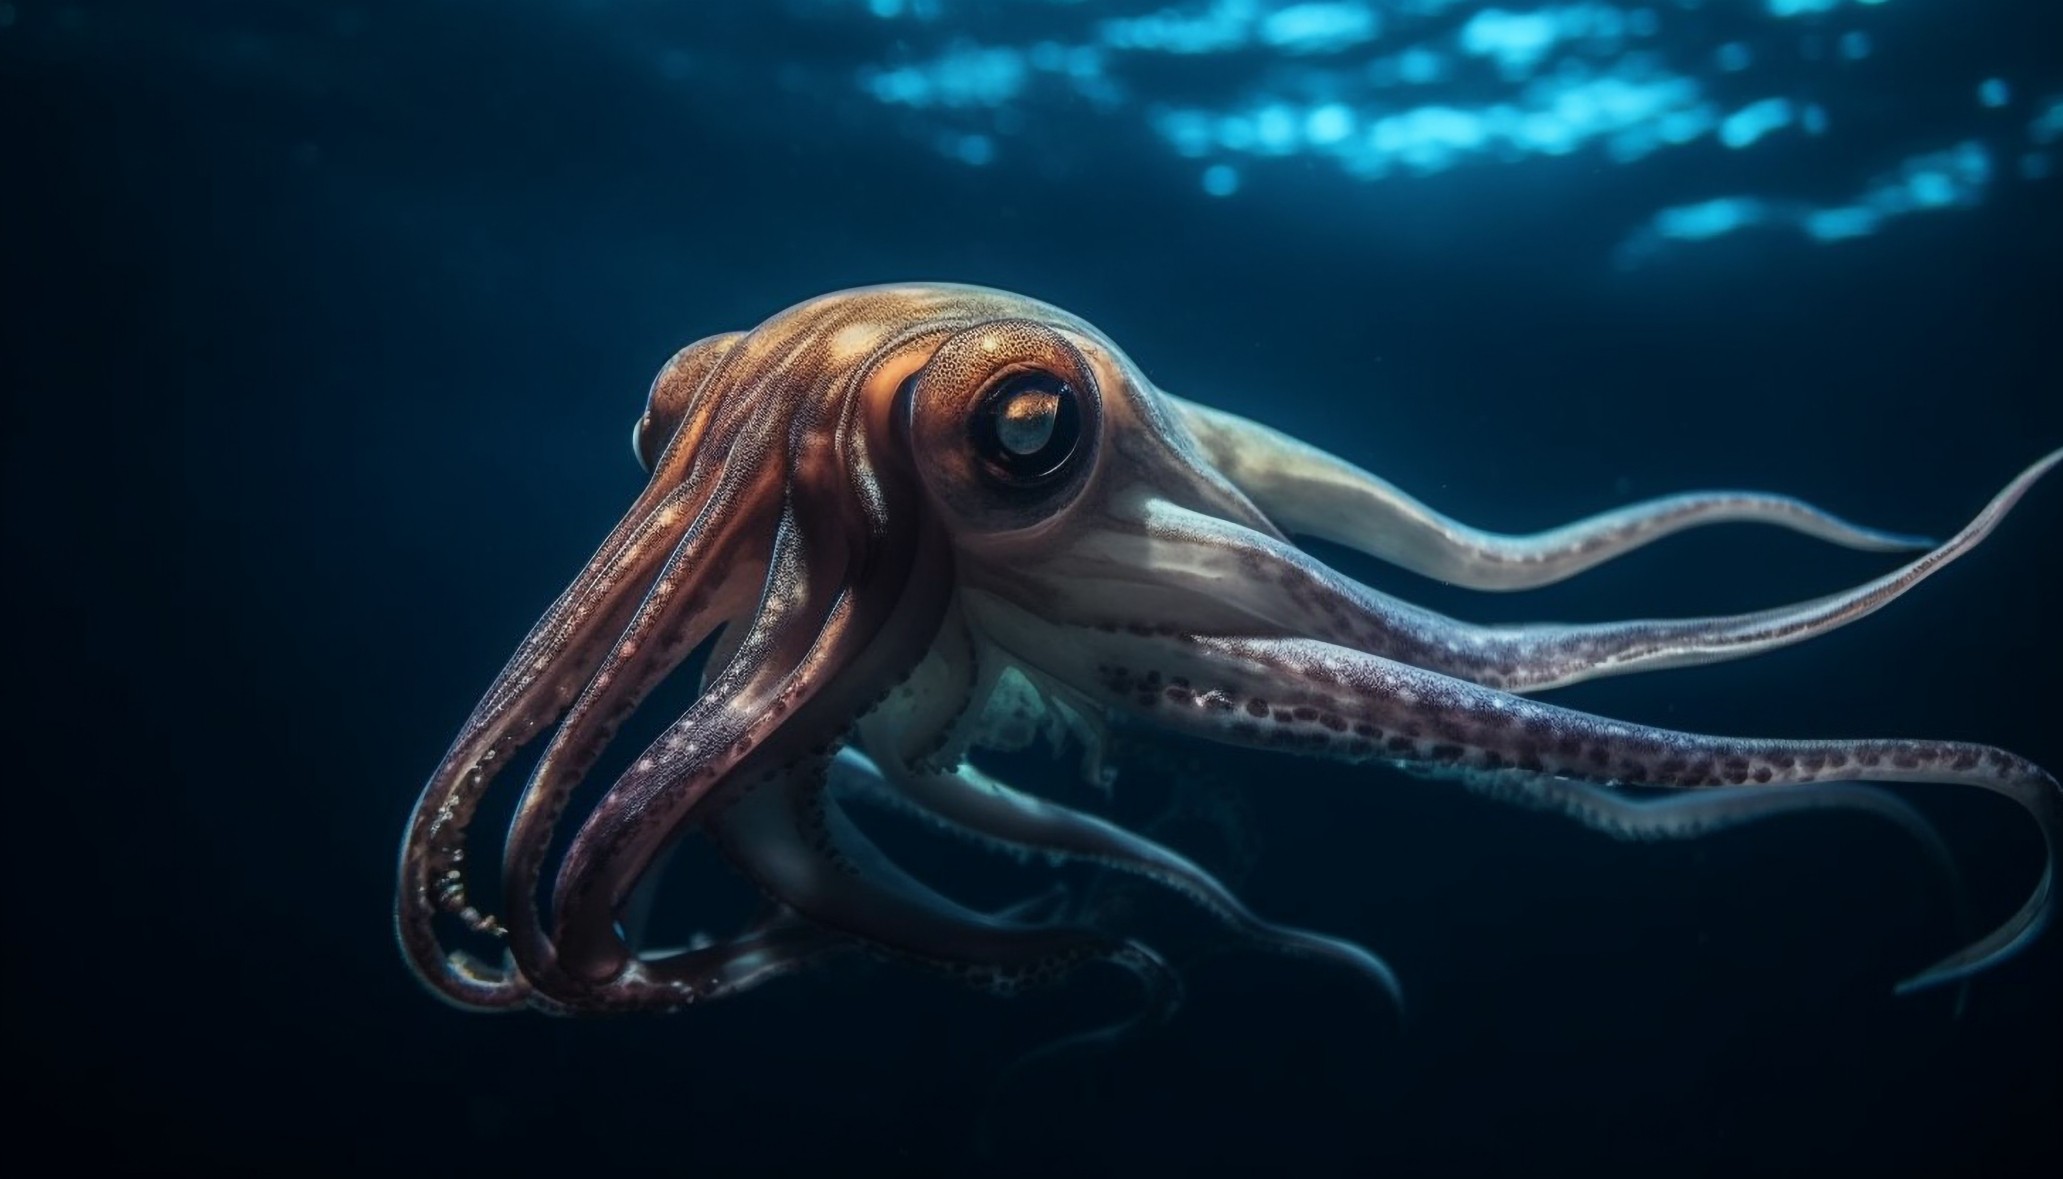 Octopus aliens udenjordiske blæksprutter